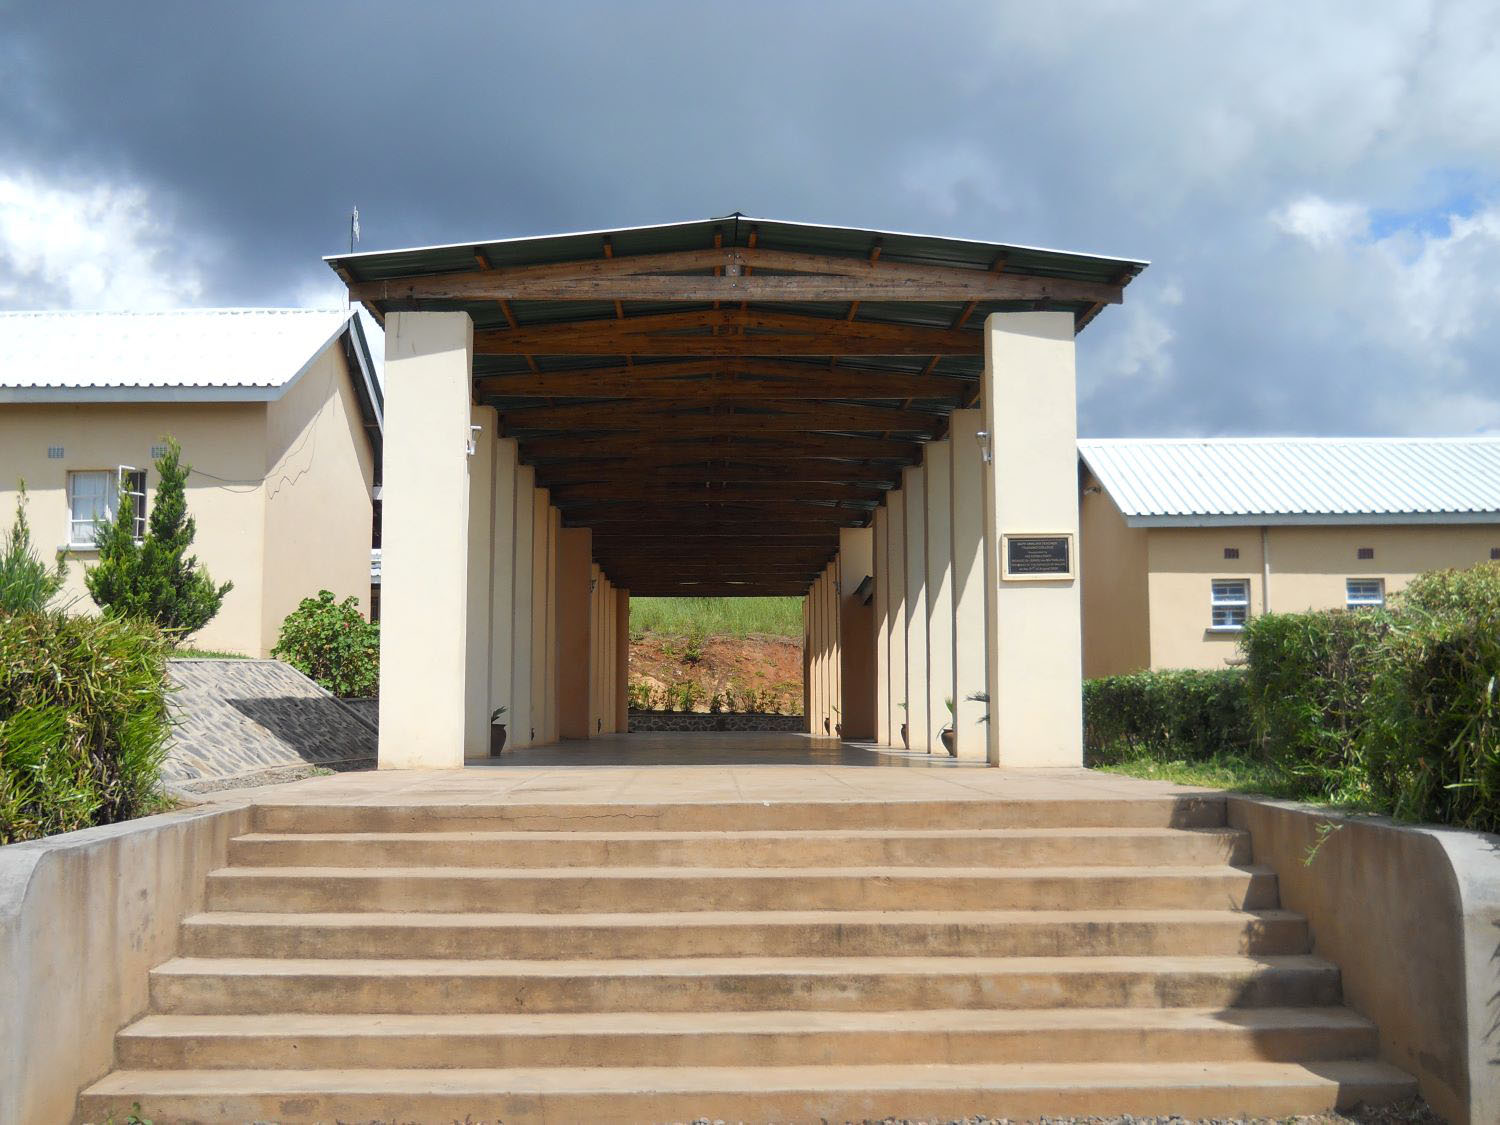 School, Malawi, Africa